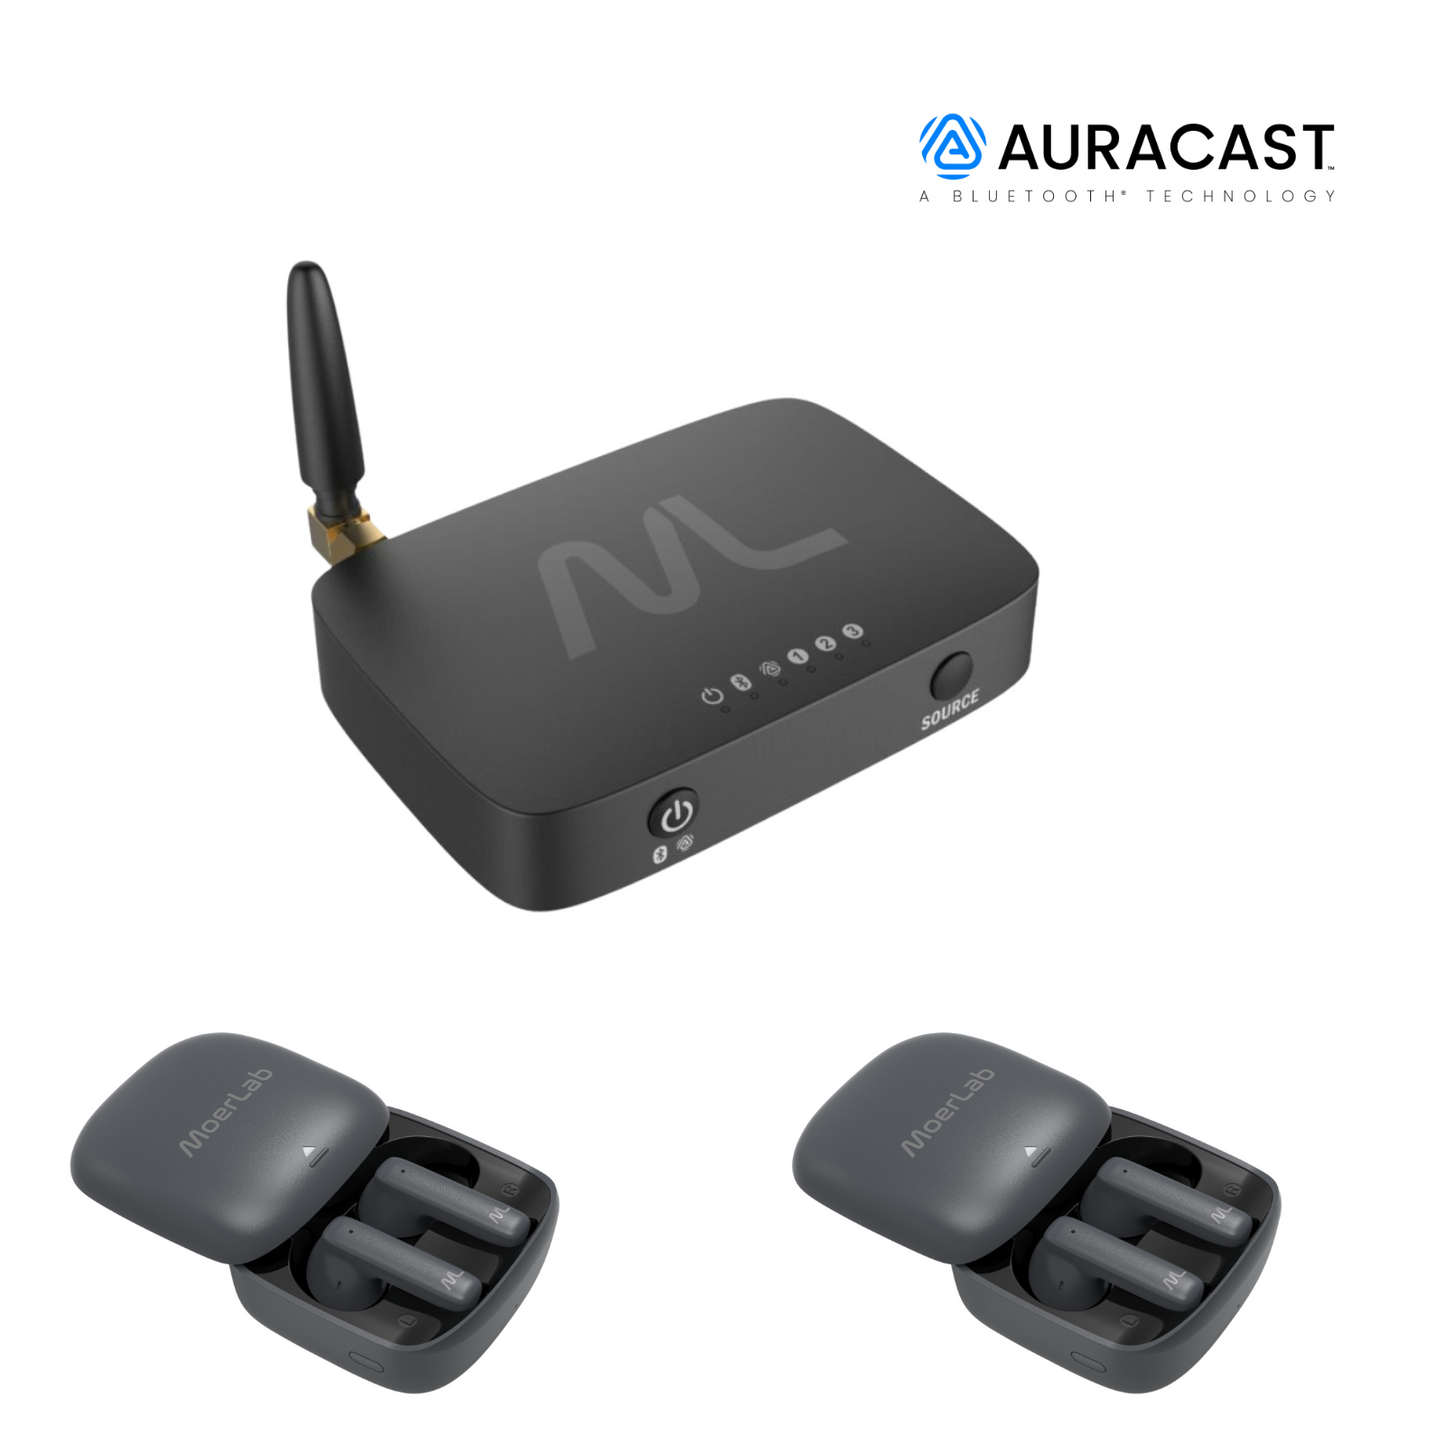 TV hearMore Auracast Solution (Bundle of TV hearMore 1 unit +hearClear 2 units)